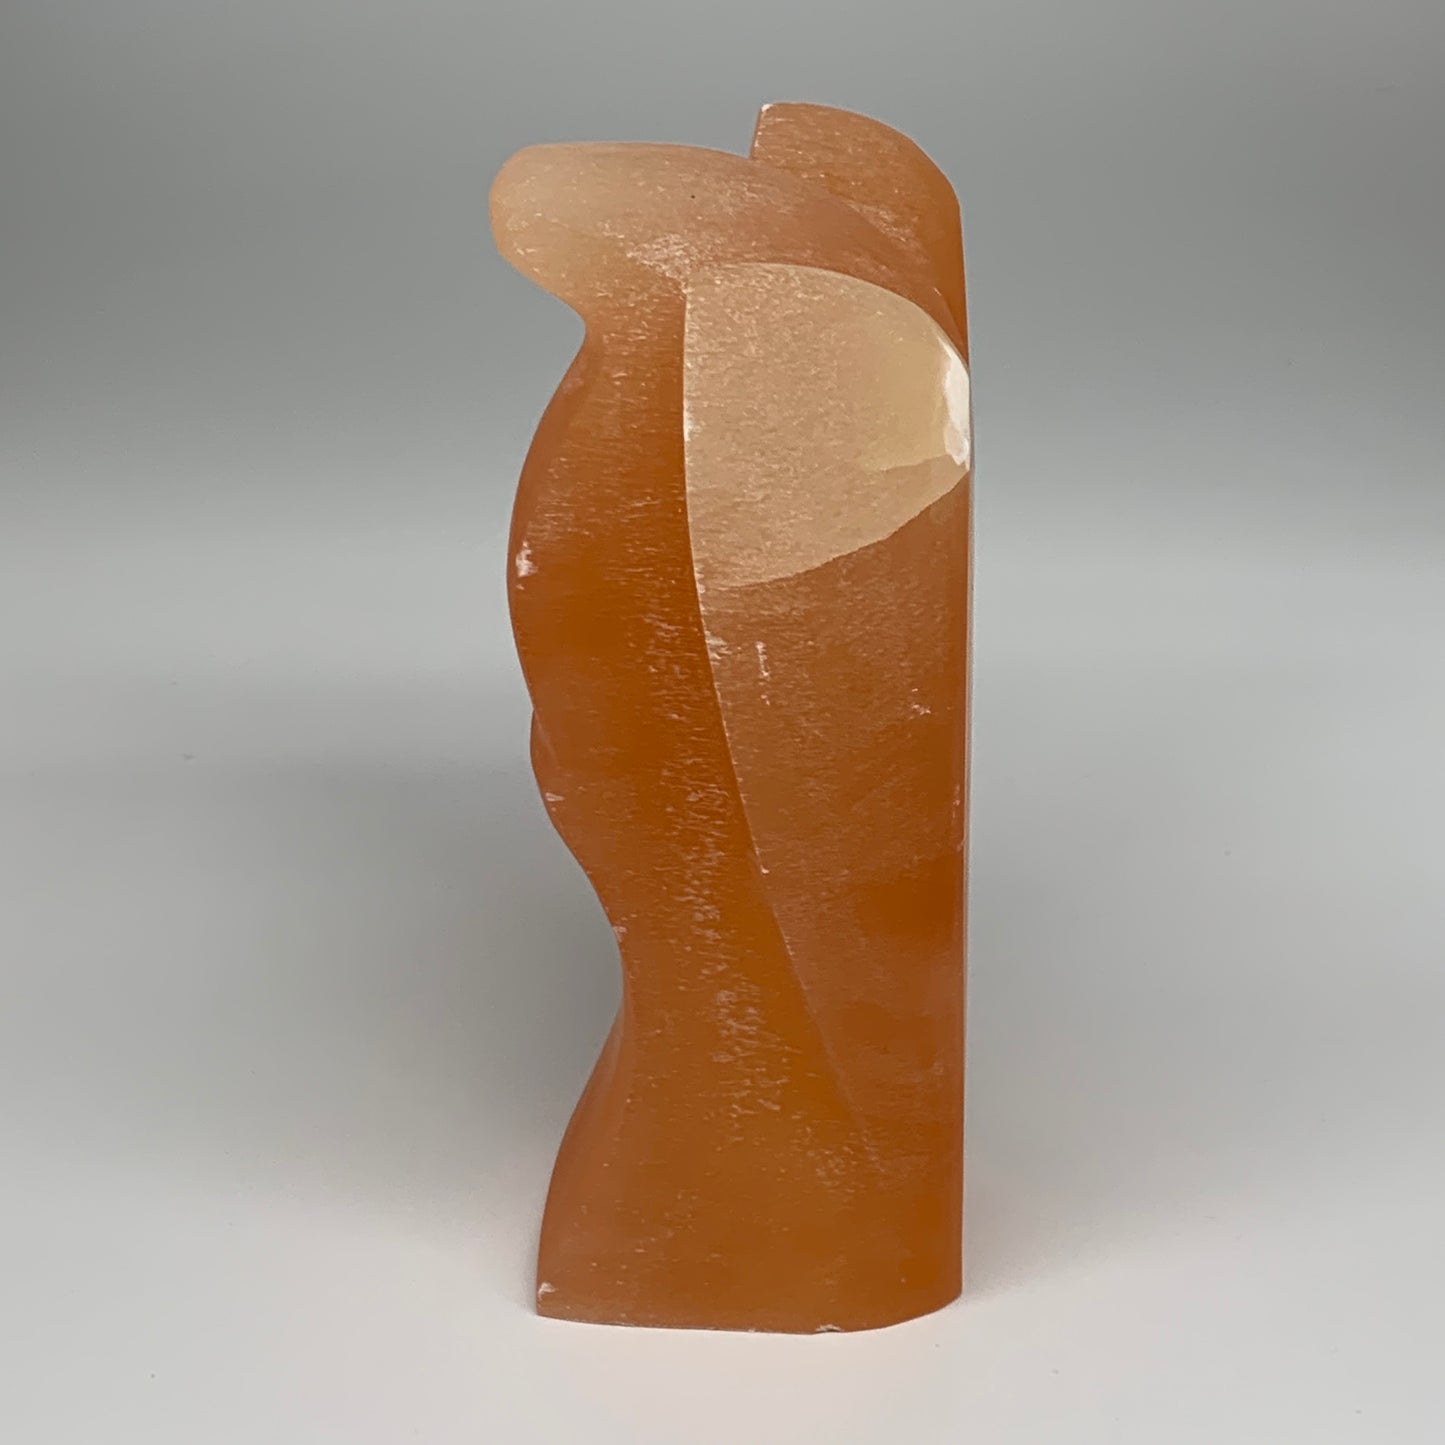 1886g, 7.75"x4.8"x2.9" Orange Selenite (Satin Spar) Angel Lamps @Morocco,B9430